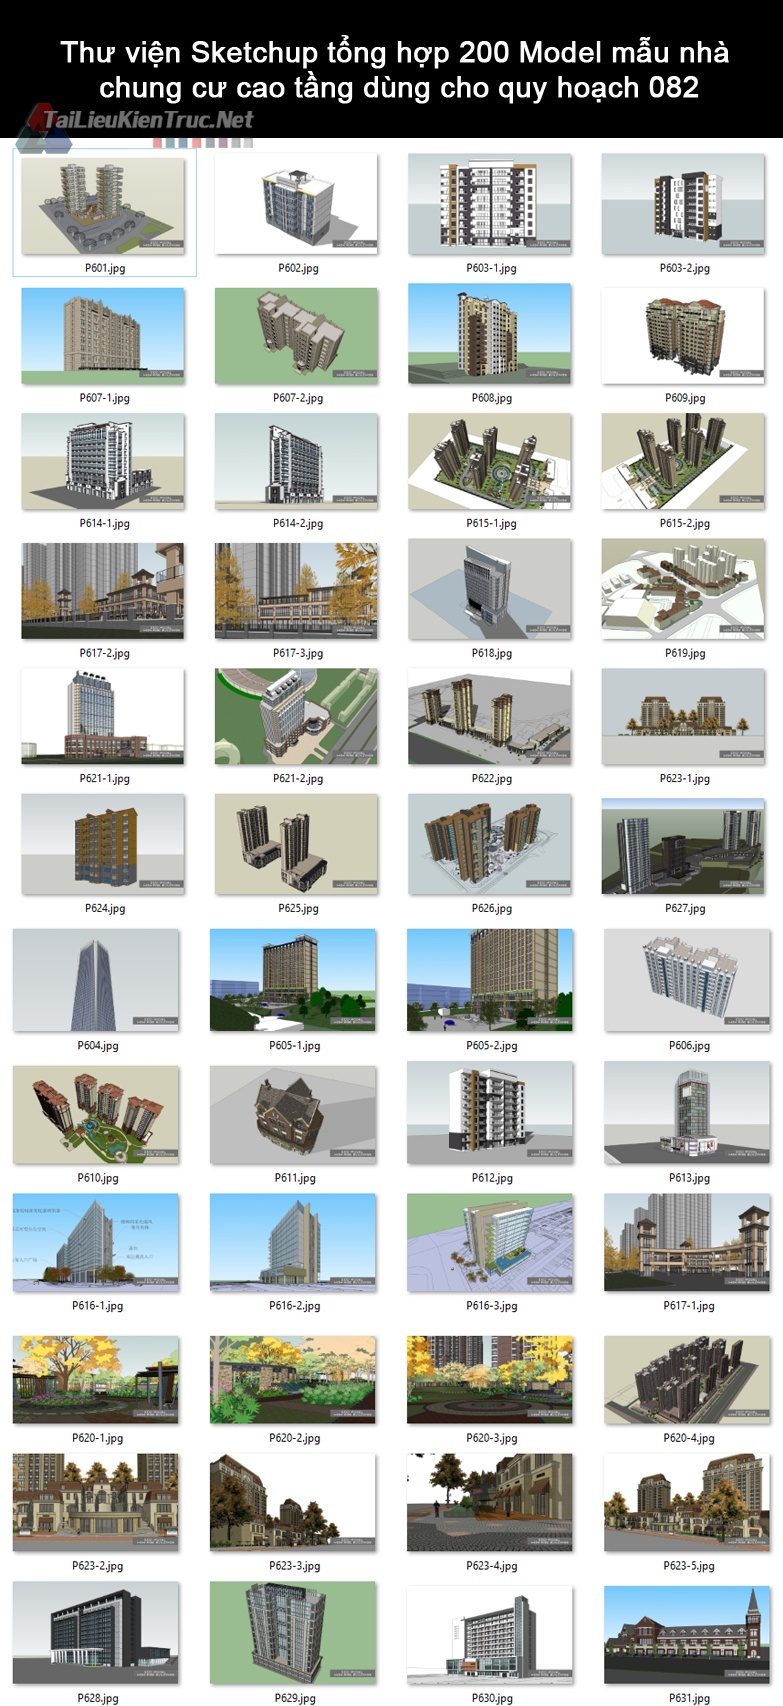 Thư viện Sketchup tổng hợp 200 Model mẫu nhà chung cư cao tầng dùng cho quy hoạch 082